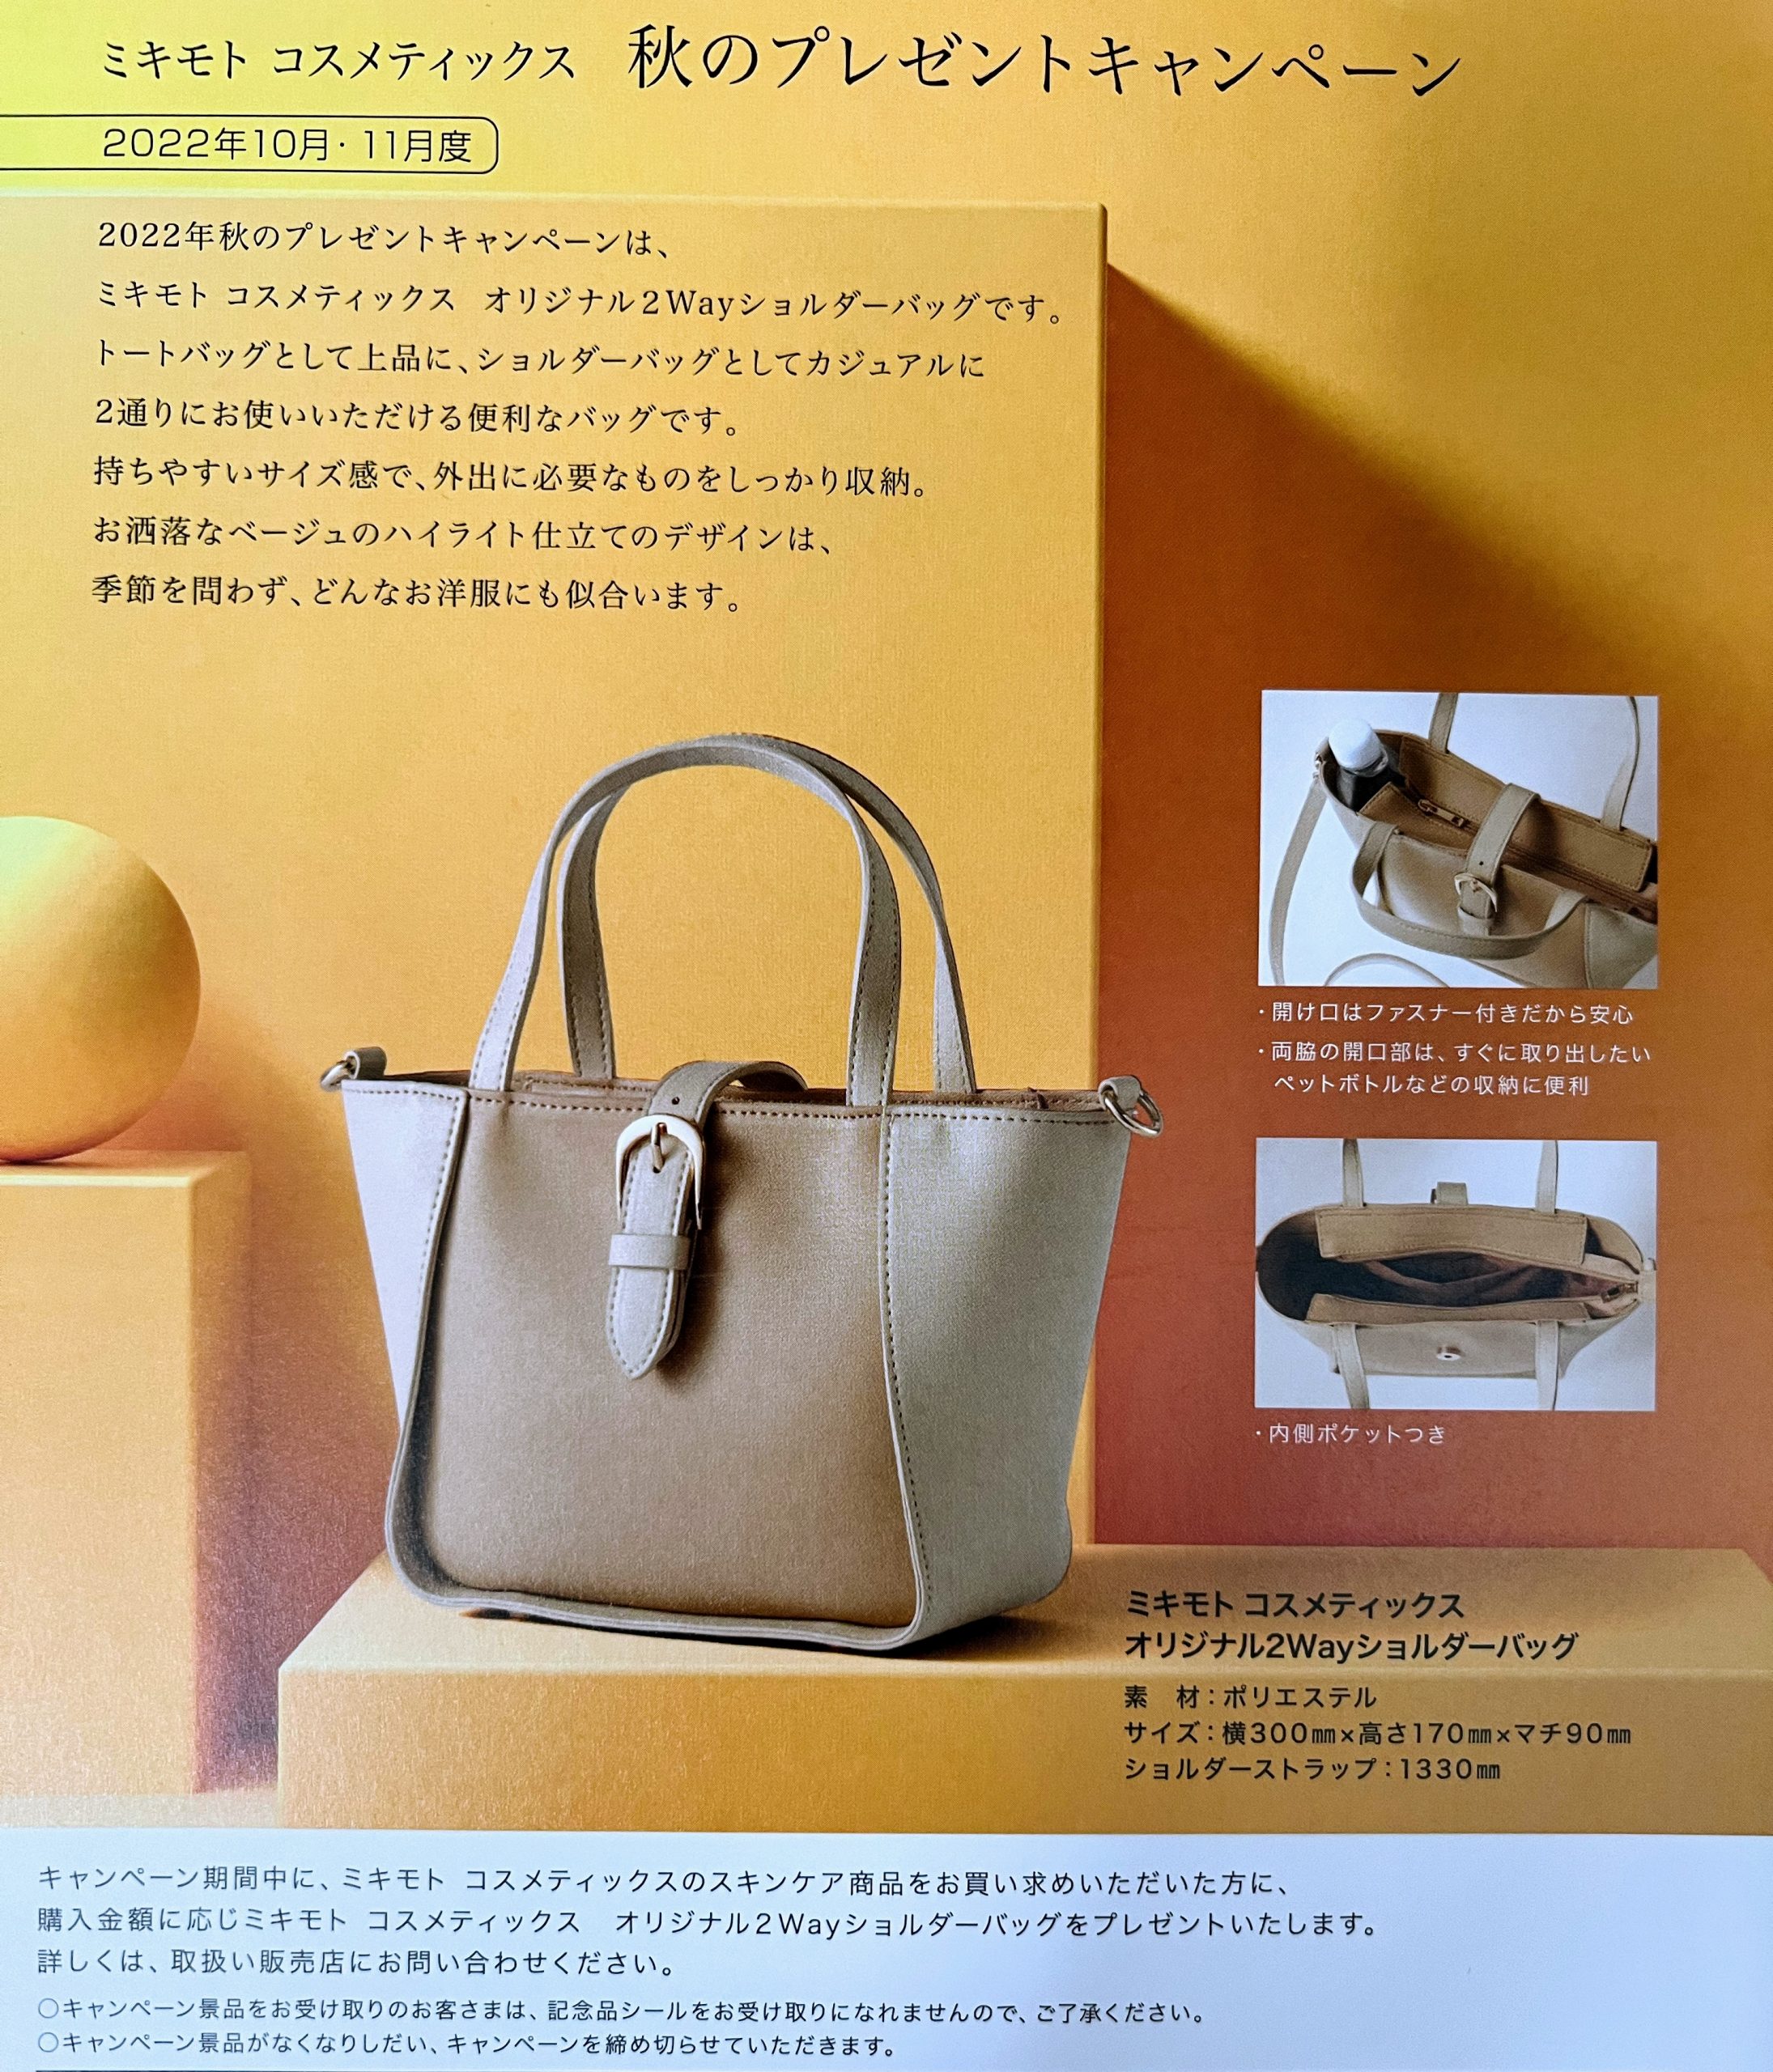 MIKIMOTO オリジナル バッグ - ハンドバッグ